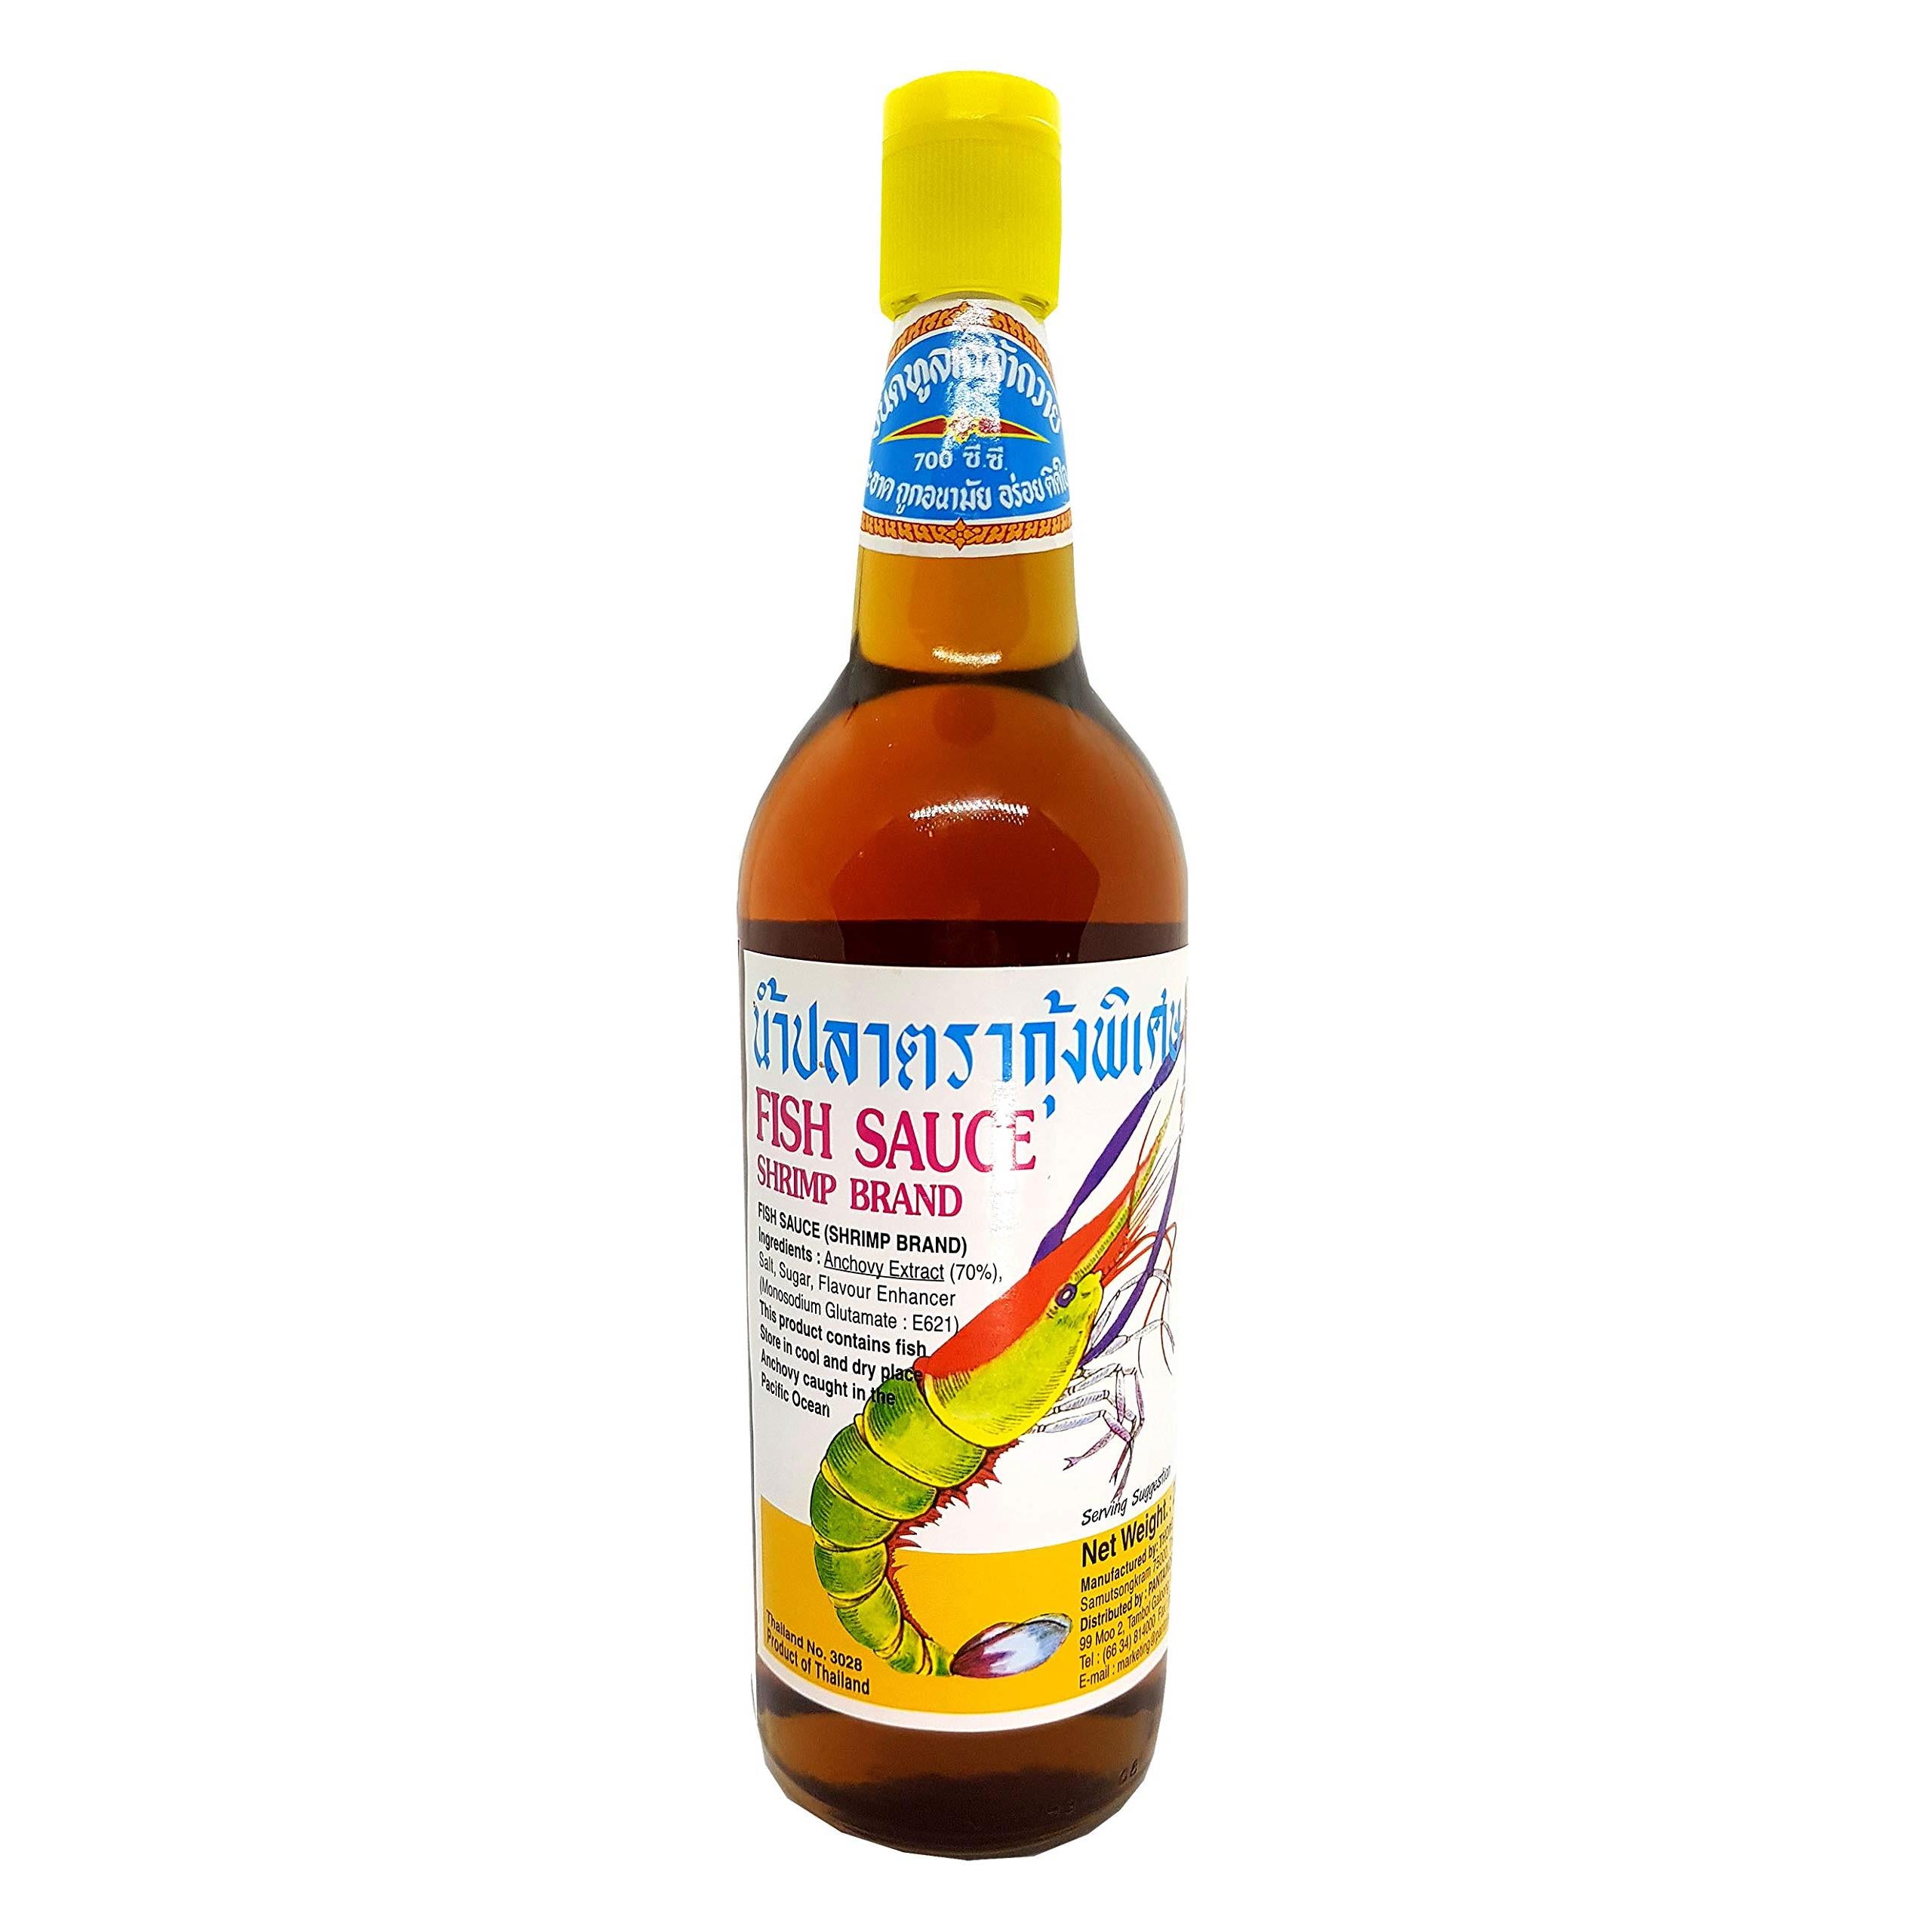 Pantai Shrimp Brand Fish Sauce, 24 Ounce